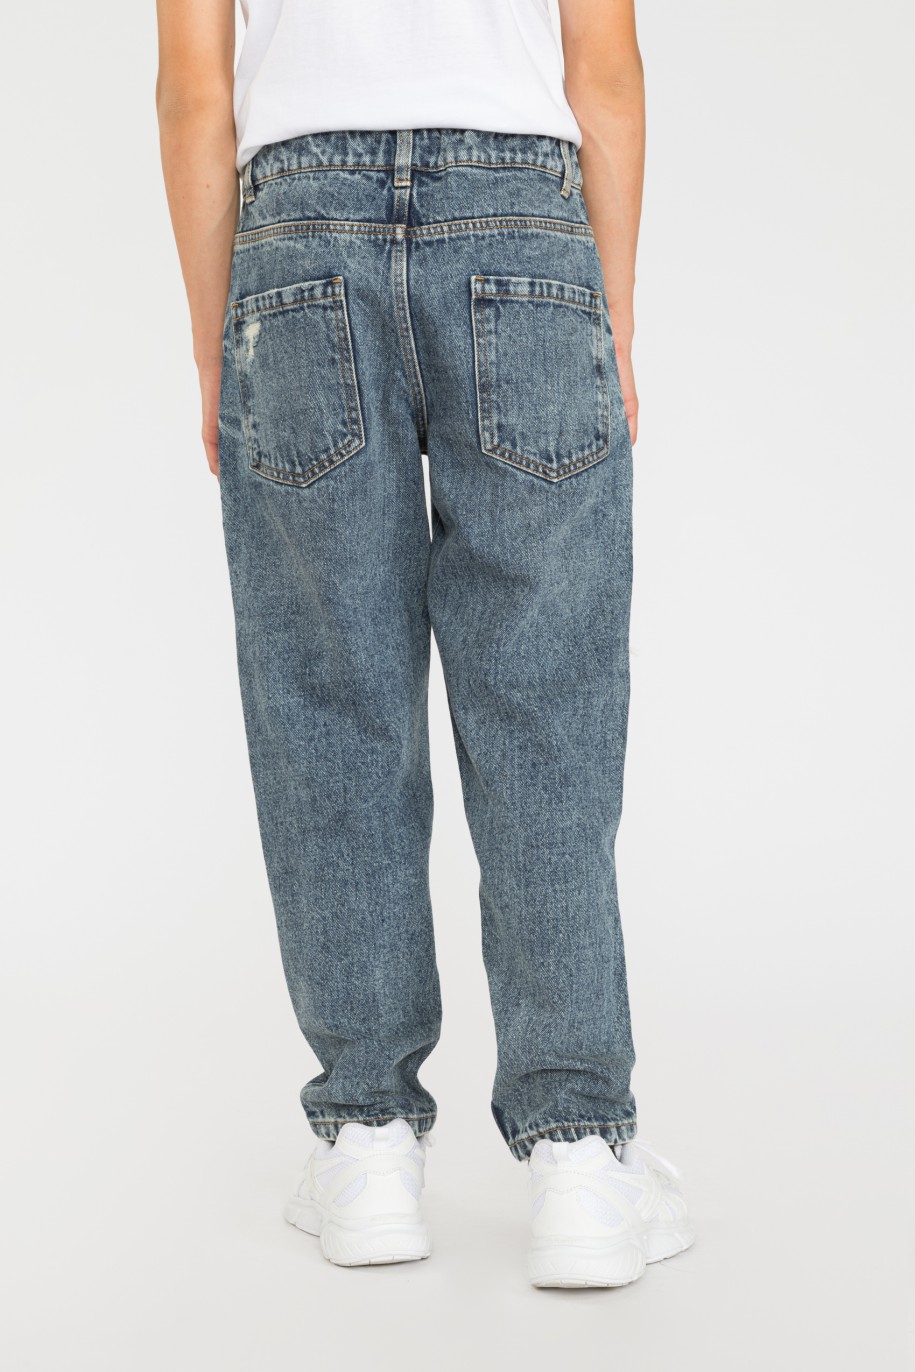 Niebieskie jeansy z przetarciami SZACHOWNICA - 36506